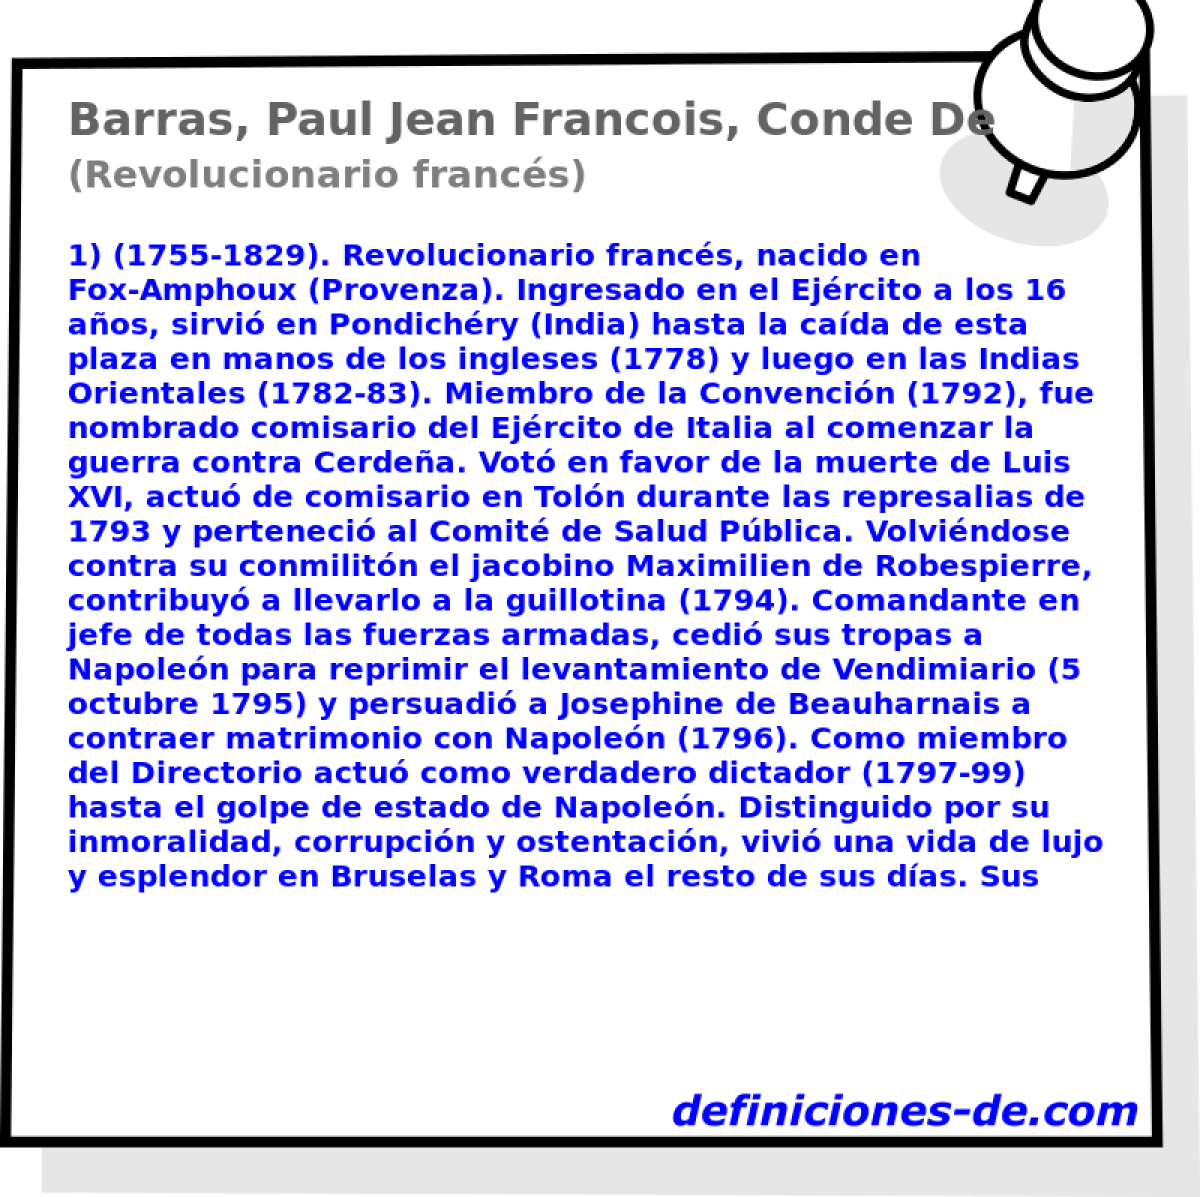 Barras, Paul Jean Francois, Conde De (Revolucionario francs)